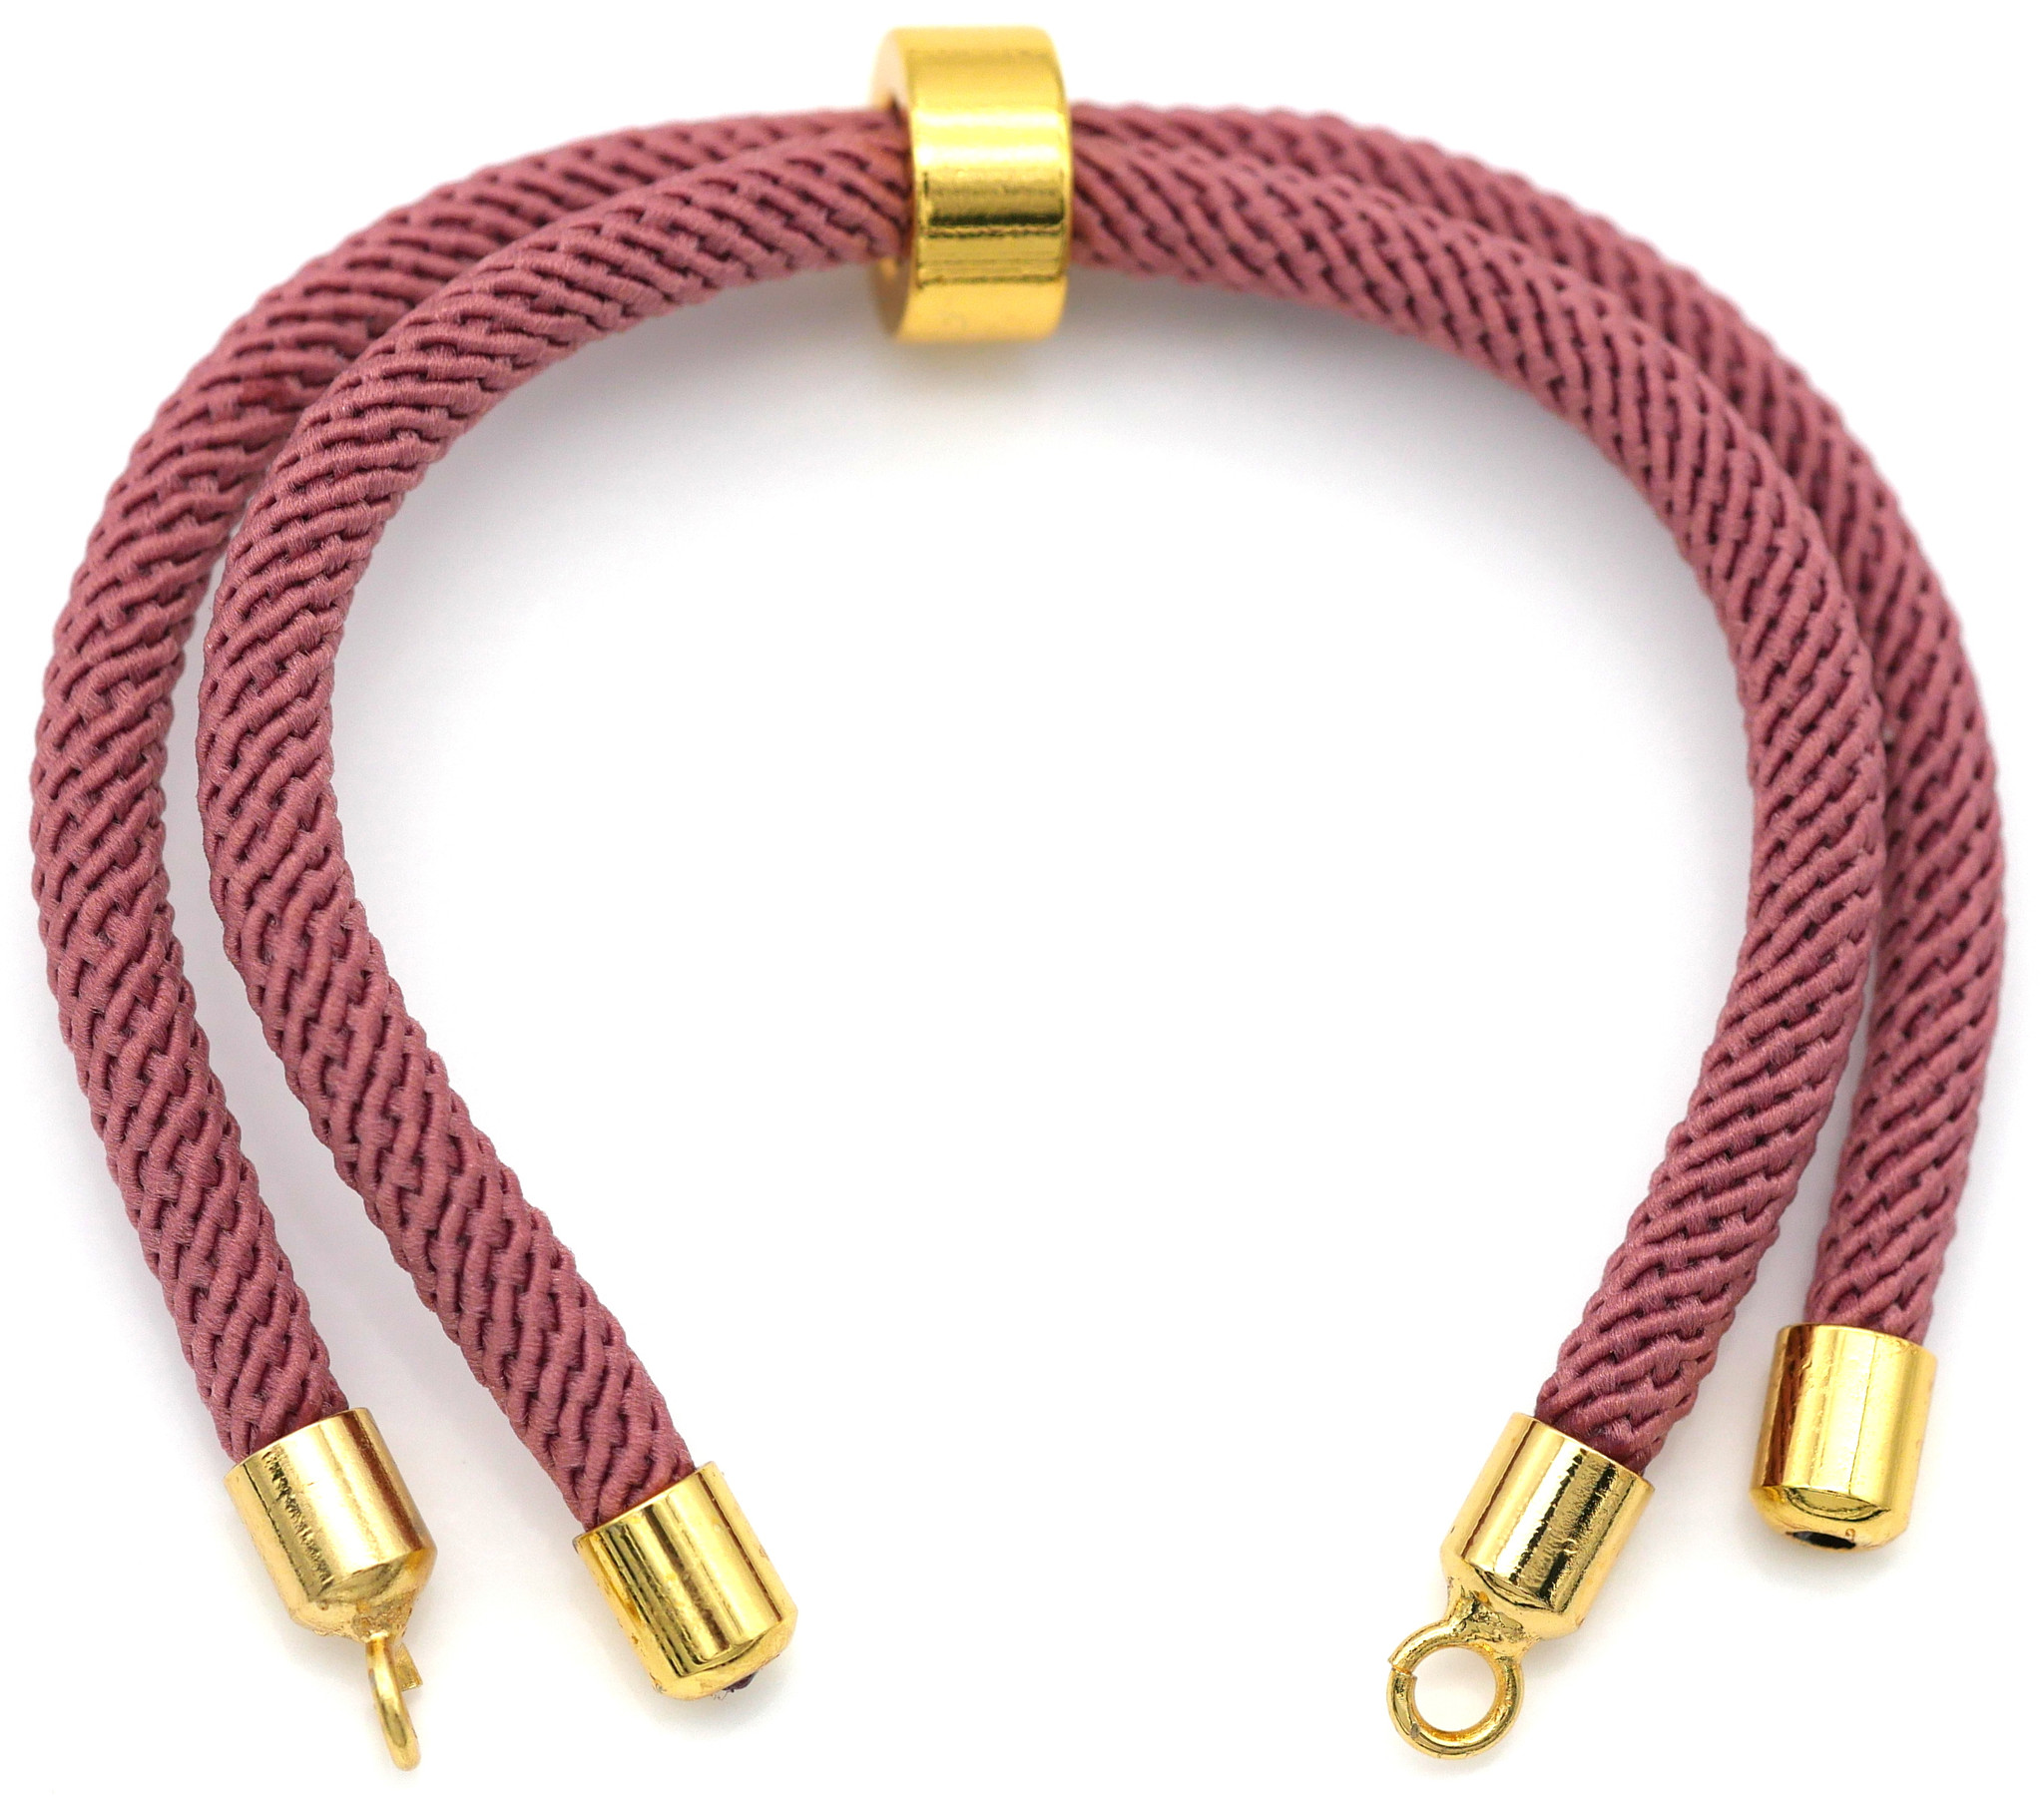 Approx. 8.5 Nylon Bracelet Cord w/Brass Loops & Adjustable Slide, Dusty  Rose